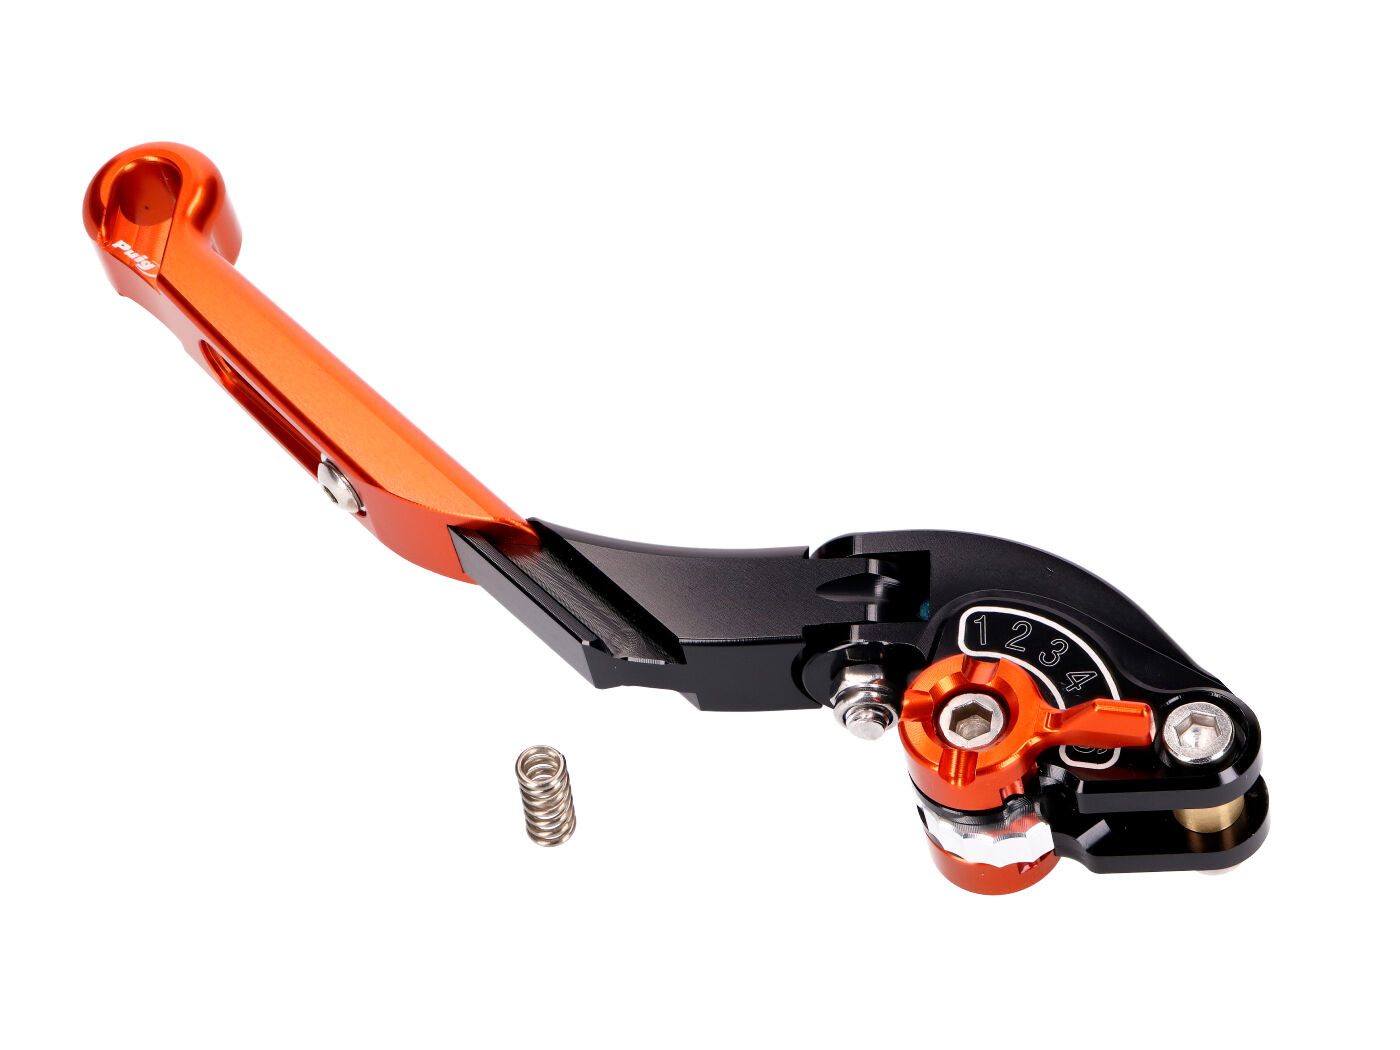 clutch lever / rear brake lever Puig 2.0 nastavovací, s nastavitelnou délkou, sklopná  - oranžová černá PUI29-TNT